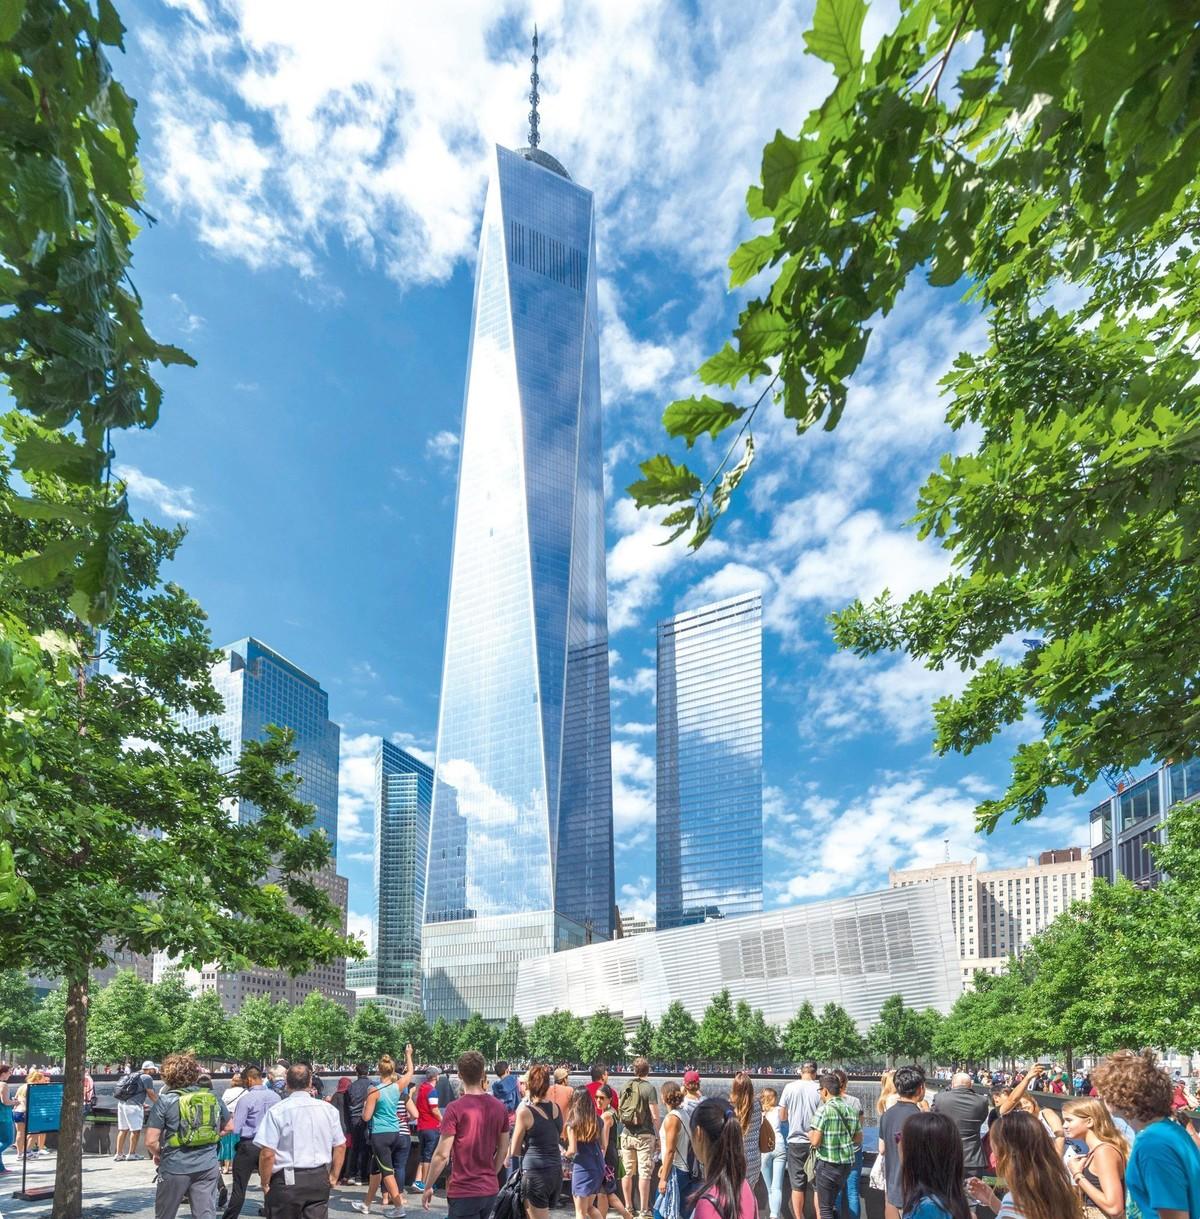 World Trade Center and 9/11 Memorial, New York, USA